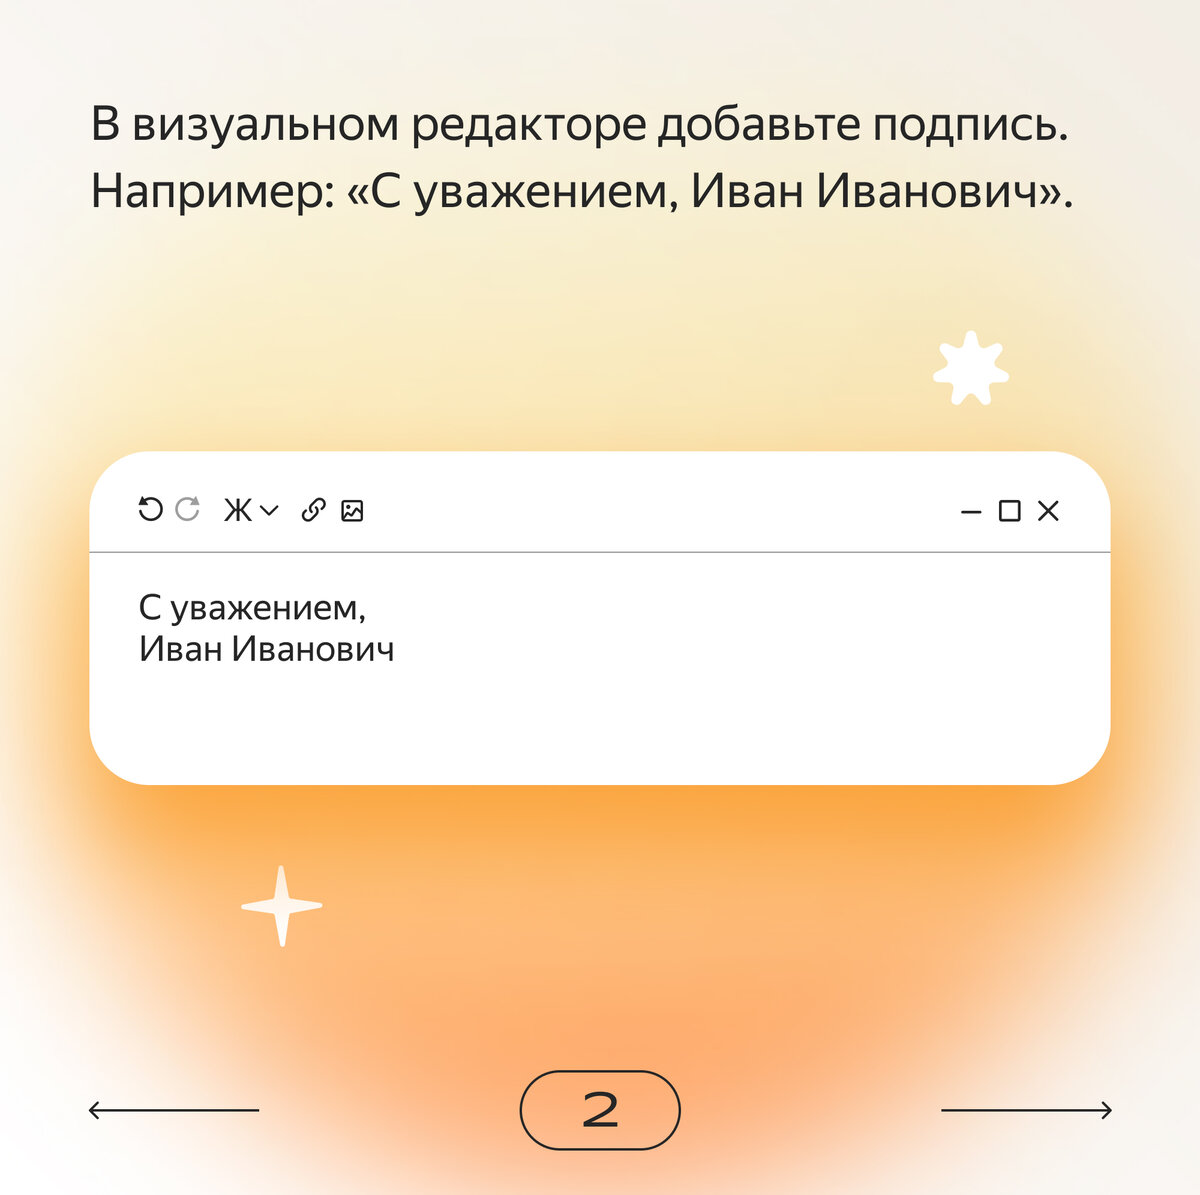 Как сделать массовую рассылку писем в Яндекс Почте: пошаговая инструкция